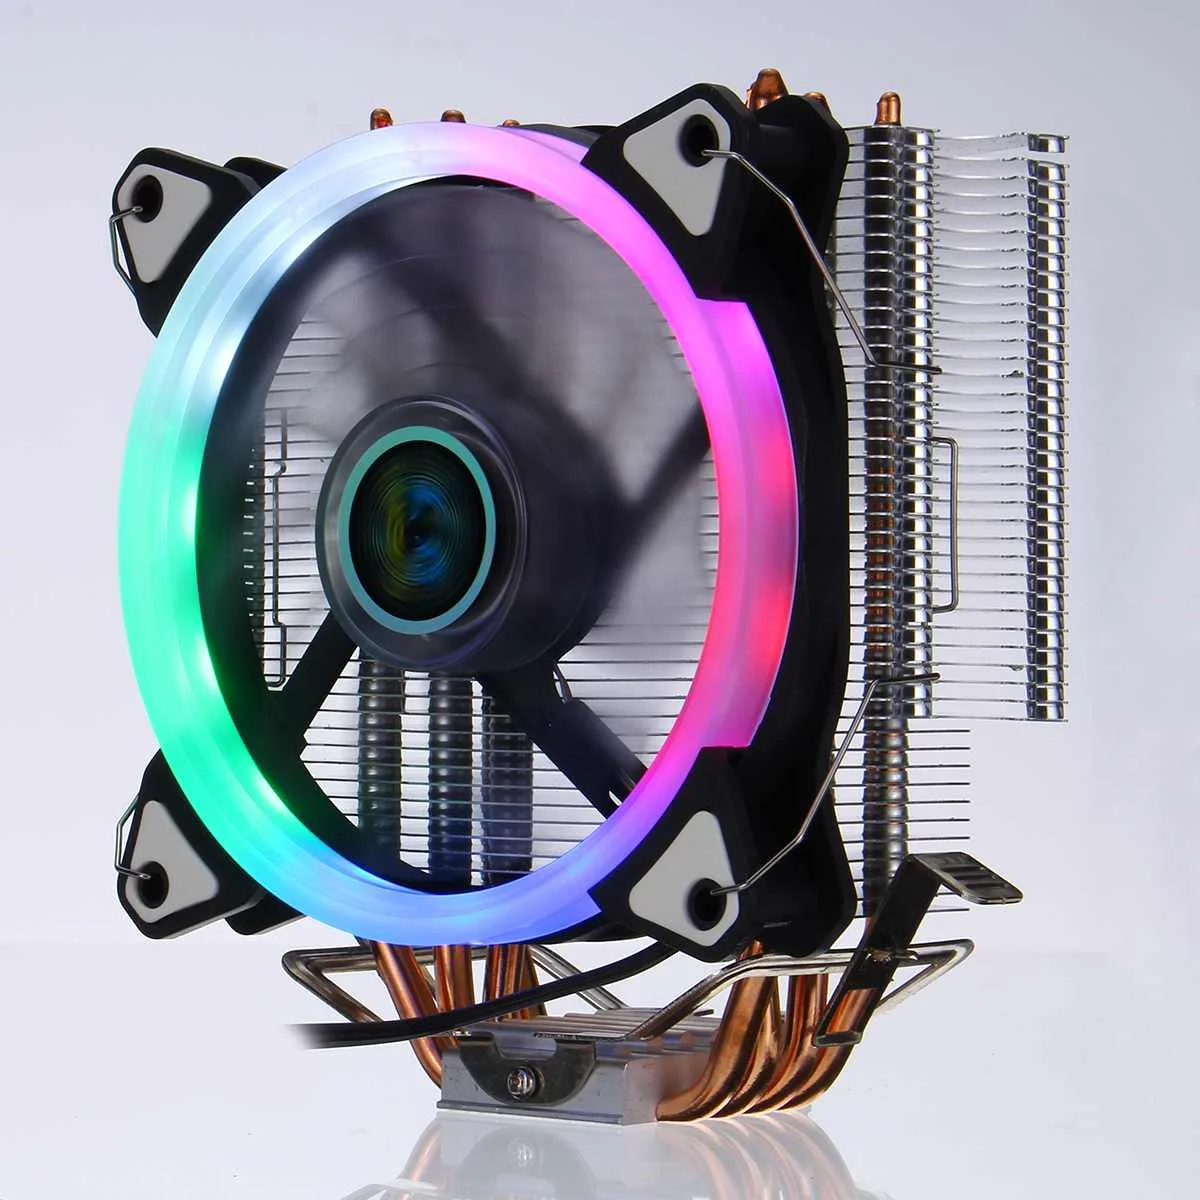 Процессор охлаждающий вентилятор радиатора 2/4/6 Медь с тепловым стержнем heat pipe 3/4Pin RGB Вентилятор Кулер для Intel 775/1150/1151/1155/1156/1366 и AMD все платформы - Цвет лезвия: Type 9